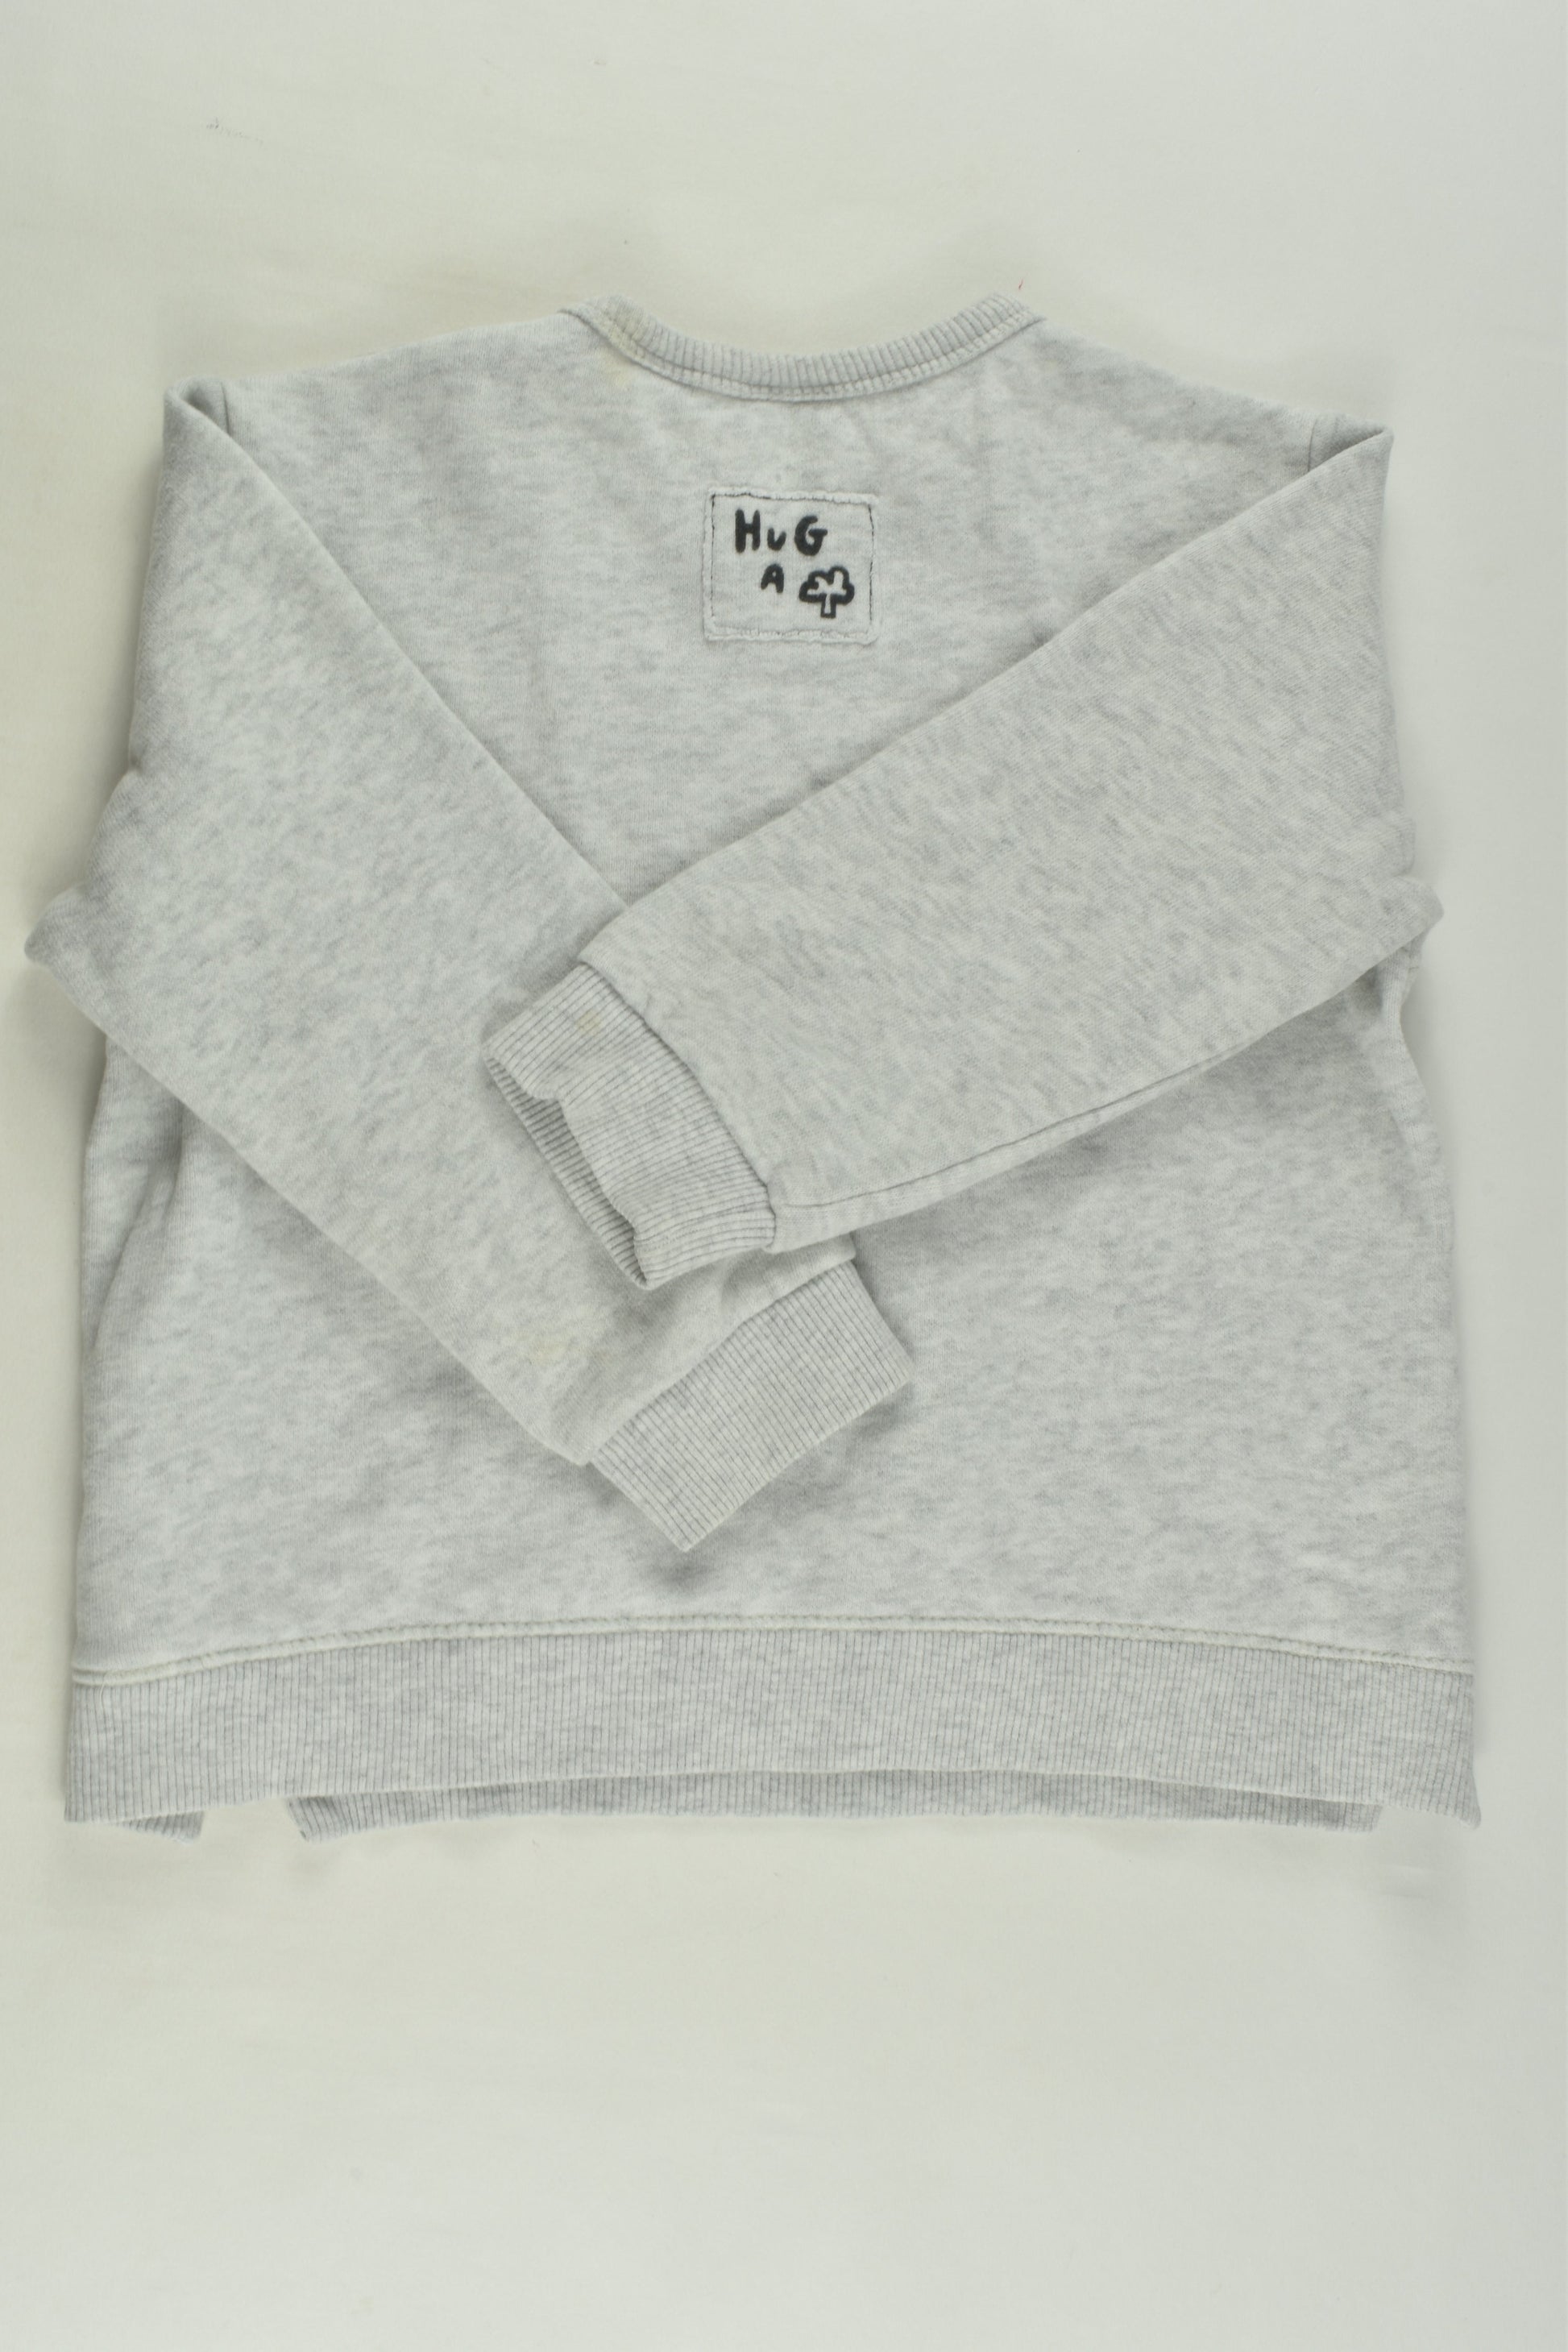 Zara Size 2-3 Sweater